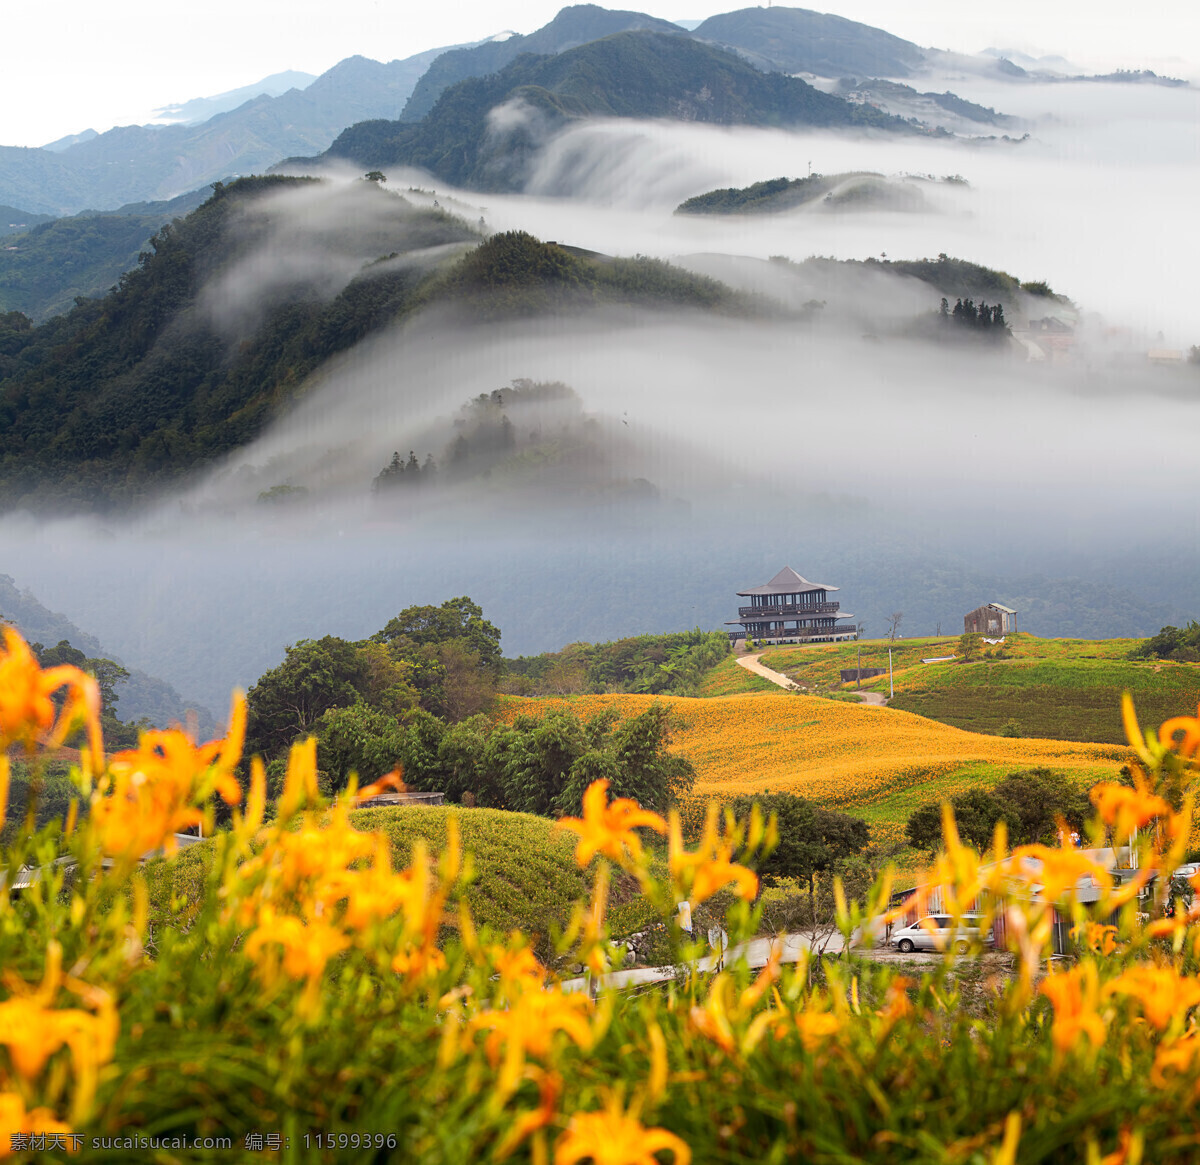 高山 上 雾气 山林 鲜花 花朵 黄色 植物 房子 山水风景 风景图片